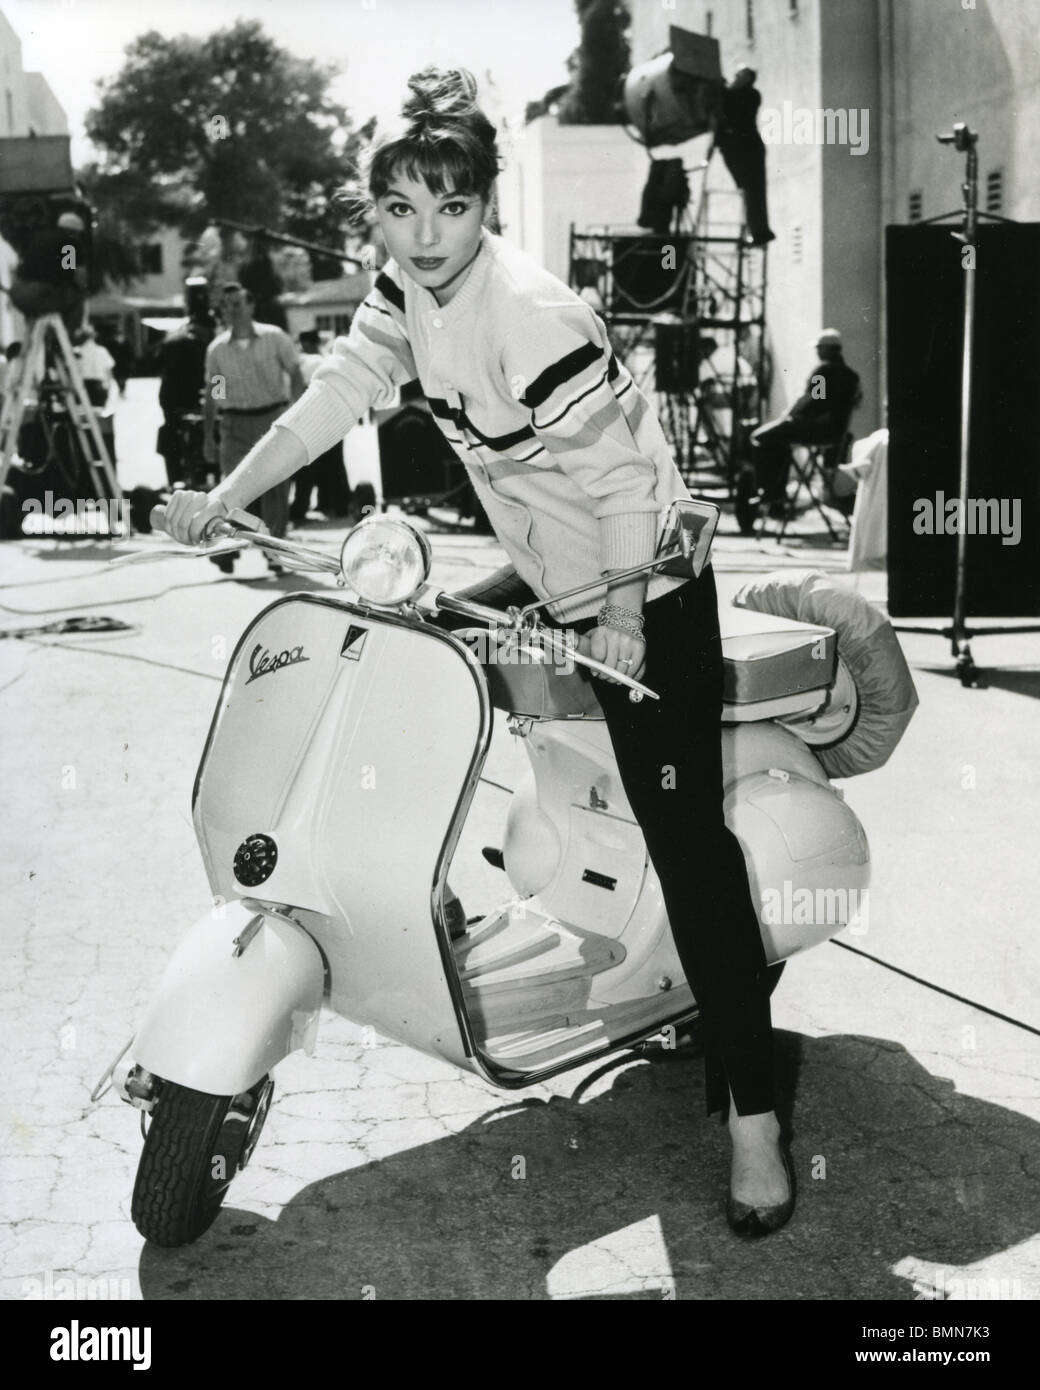 ELSA MARTINELLI - actrice italienne sur un scooter Vespa sur 1953 Photo  Stock - Alamy